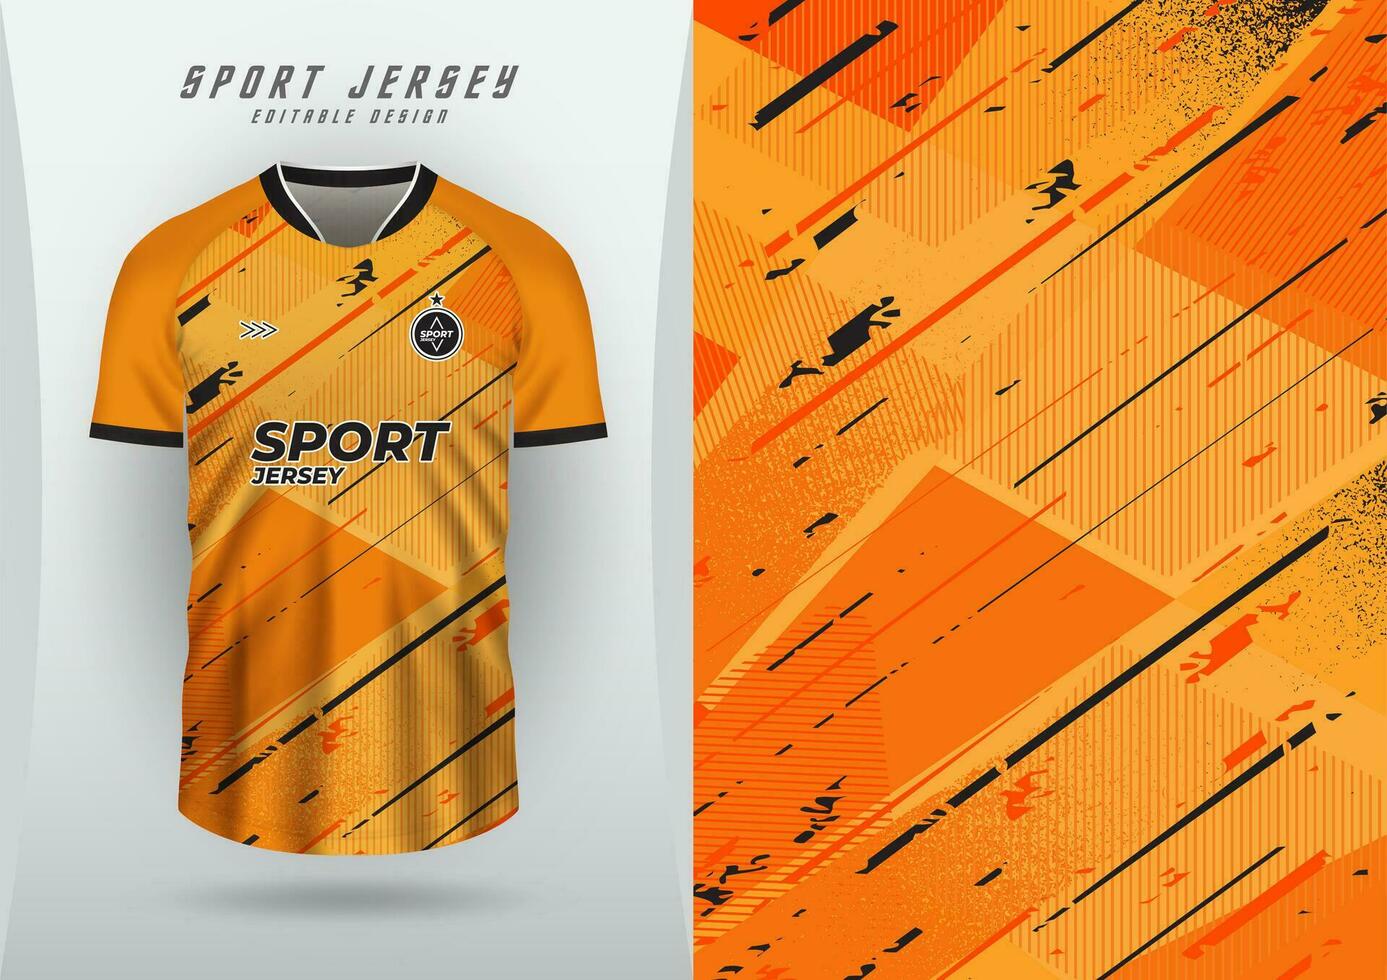 Hintergrund zum Sport Jersey Fußball Jersey Laufen Jersey Rennen Jersey Muster Orange Grunge vektor